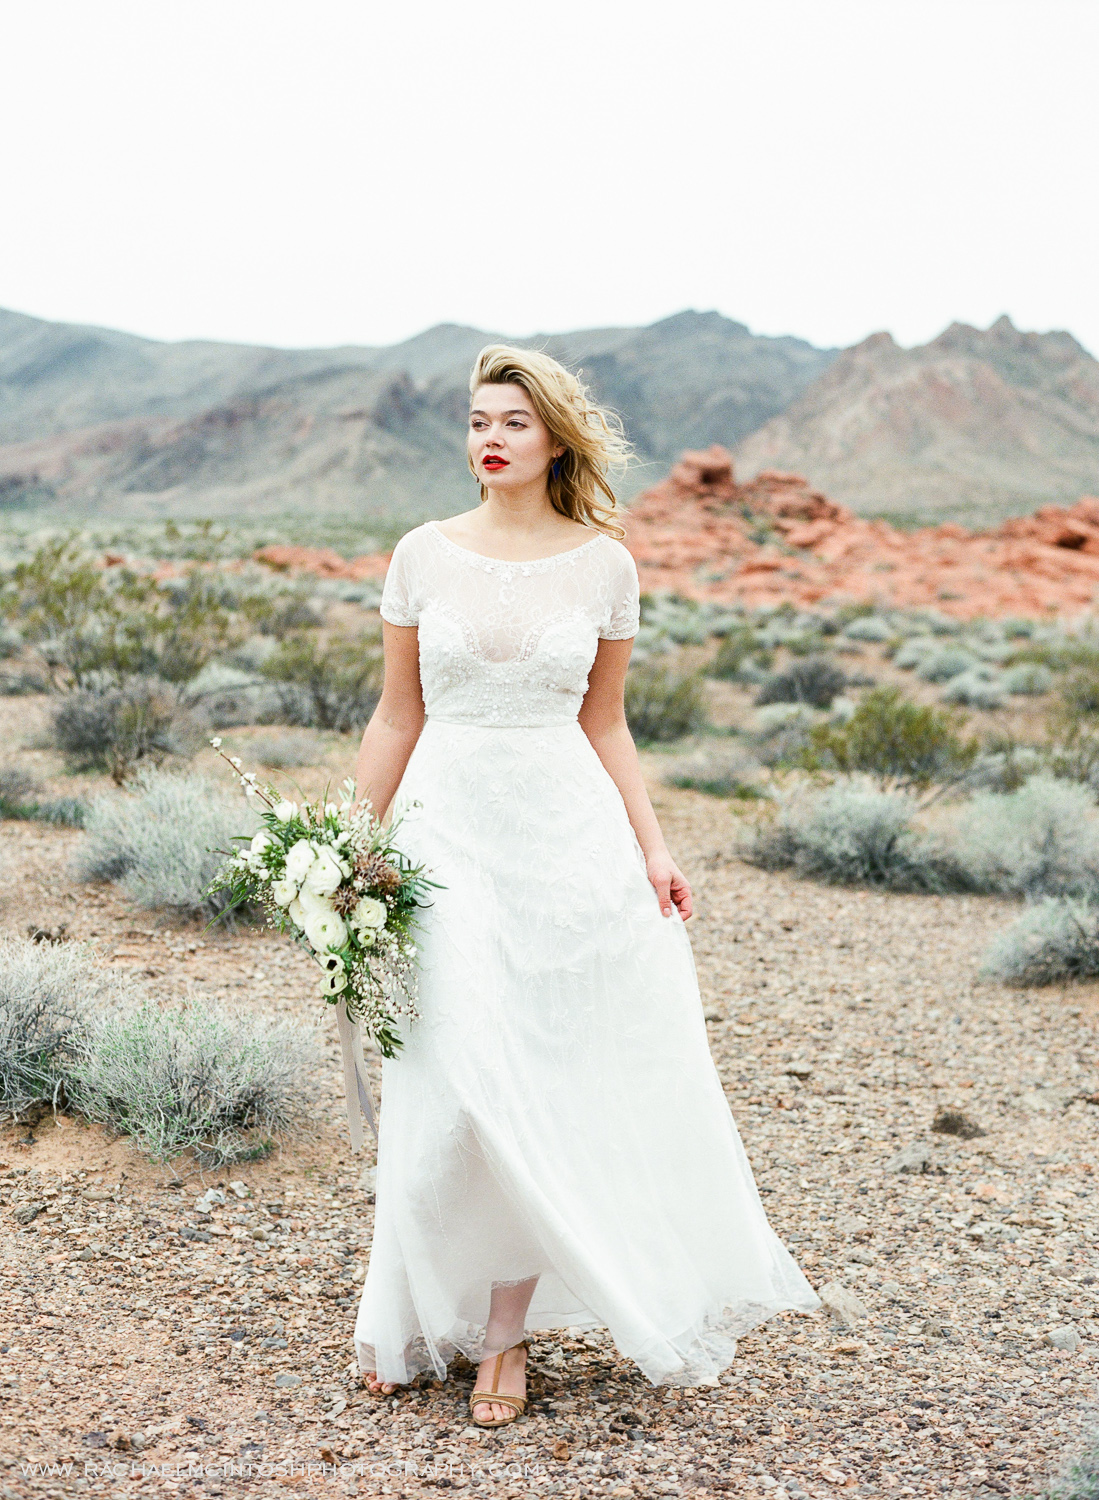 Khrystyana-styled-shoot-desert-wedding-1.jpg